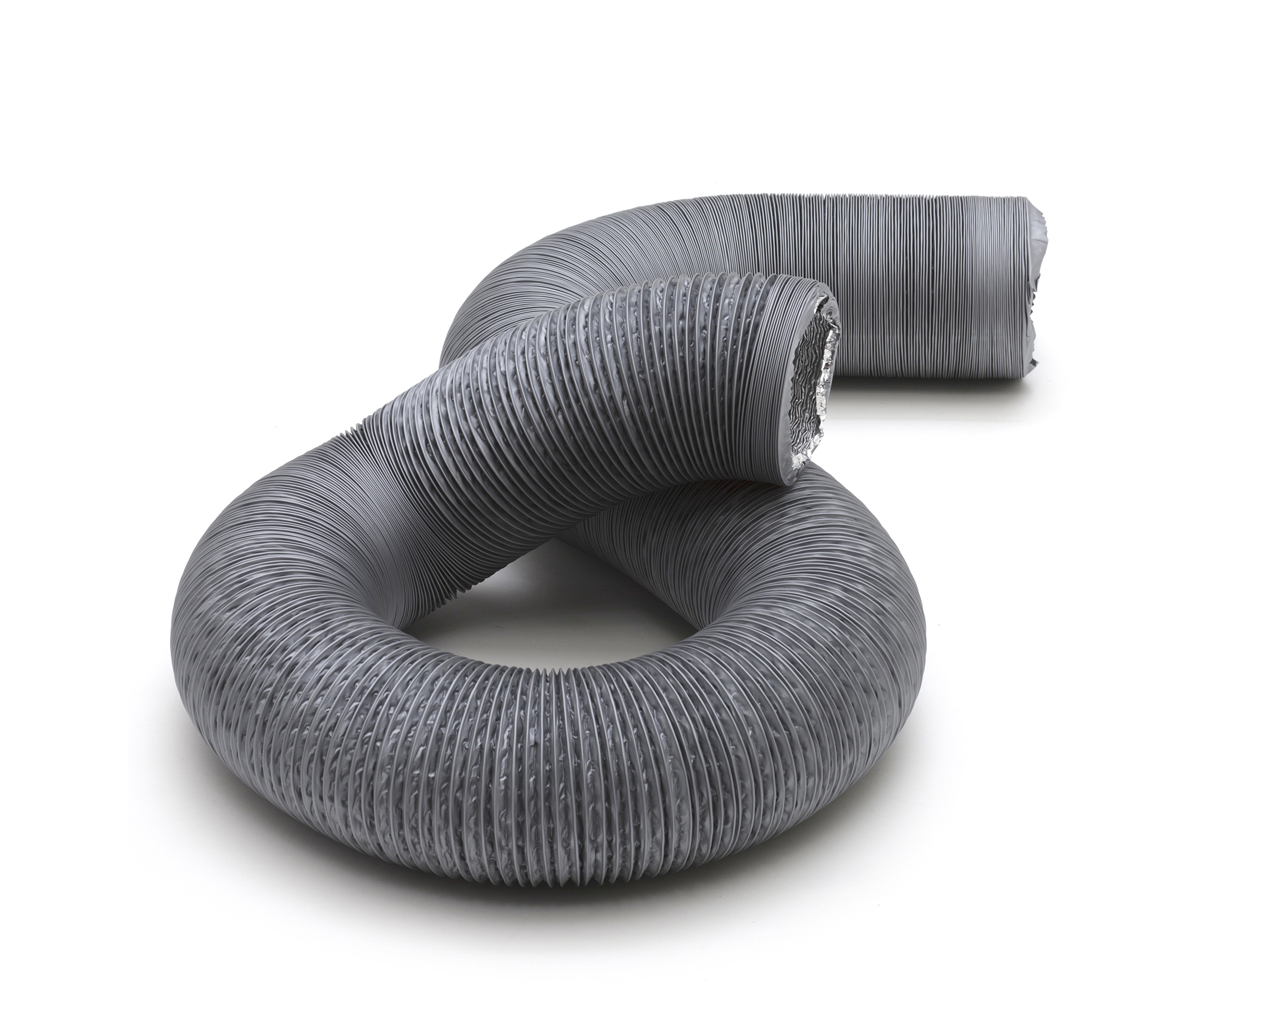 FLEX010CD Flexibele slang combi (FLEX...CD) De Flexibele slang combi is gemaakt van 2 lagen met binnen een aluminium laag, gelijmd aan een kunststof buitenlaag met daartussen een metalen spiraal die de stijfheid en de vorm van de slang borgt. De slang wordt gebruikt als aansluiting aan ventilatoren, roosters en ventielen.